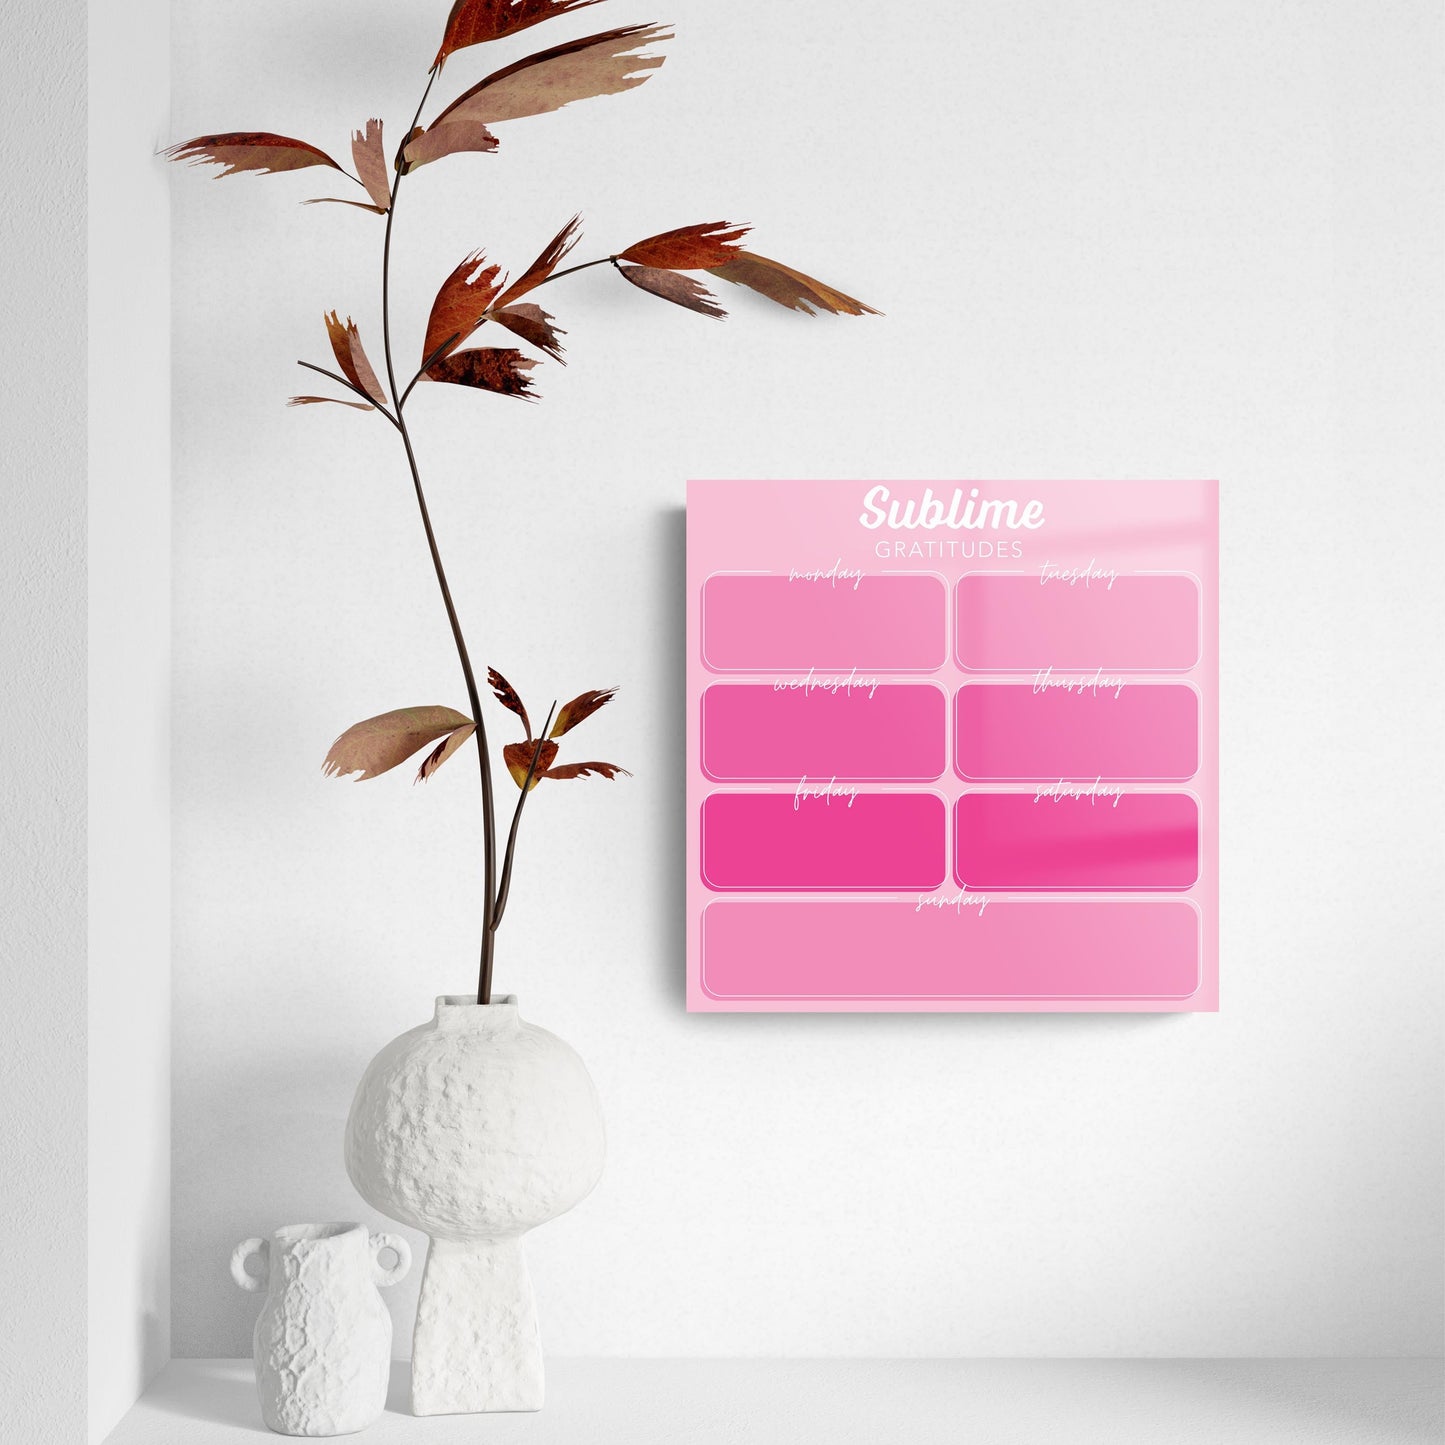 Pink Dream Gradient Sublime Gratitudes | 8x8